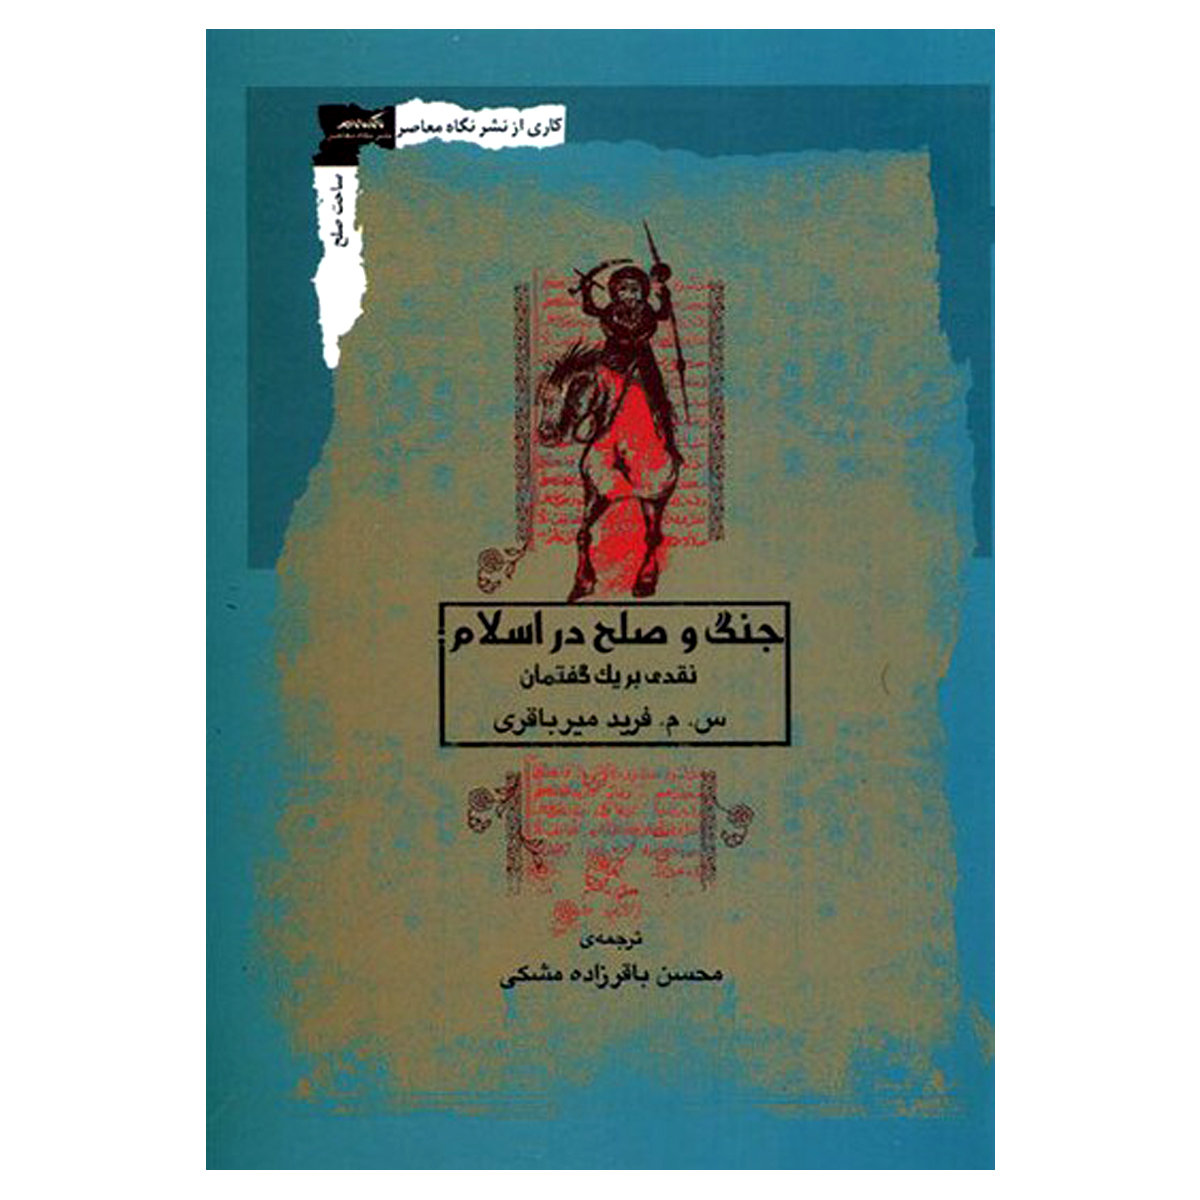 کتاب جنگ و صلح در اسلام نقدی بر یک گفتمان اثر س م فرید میرباقری انتشارات نگاه معاصر